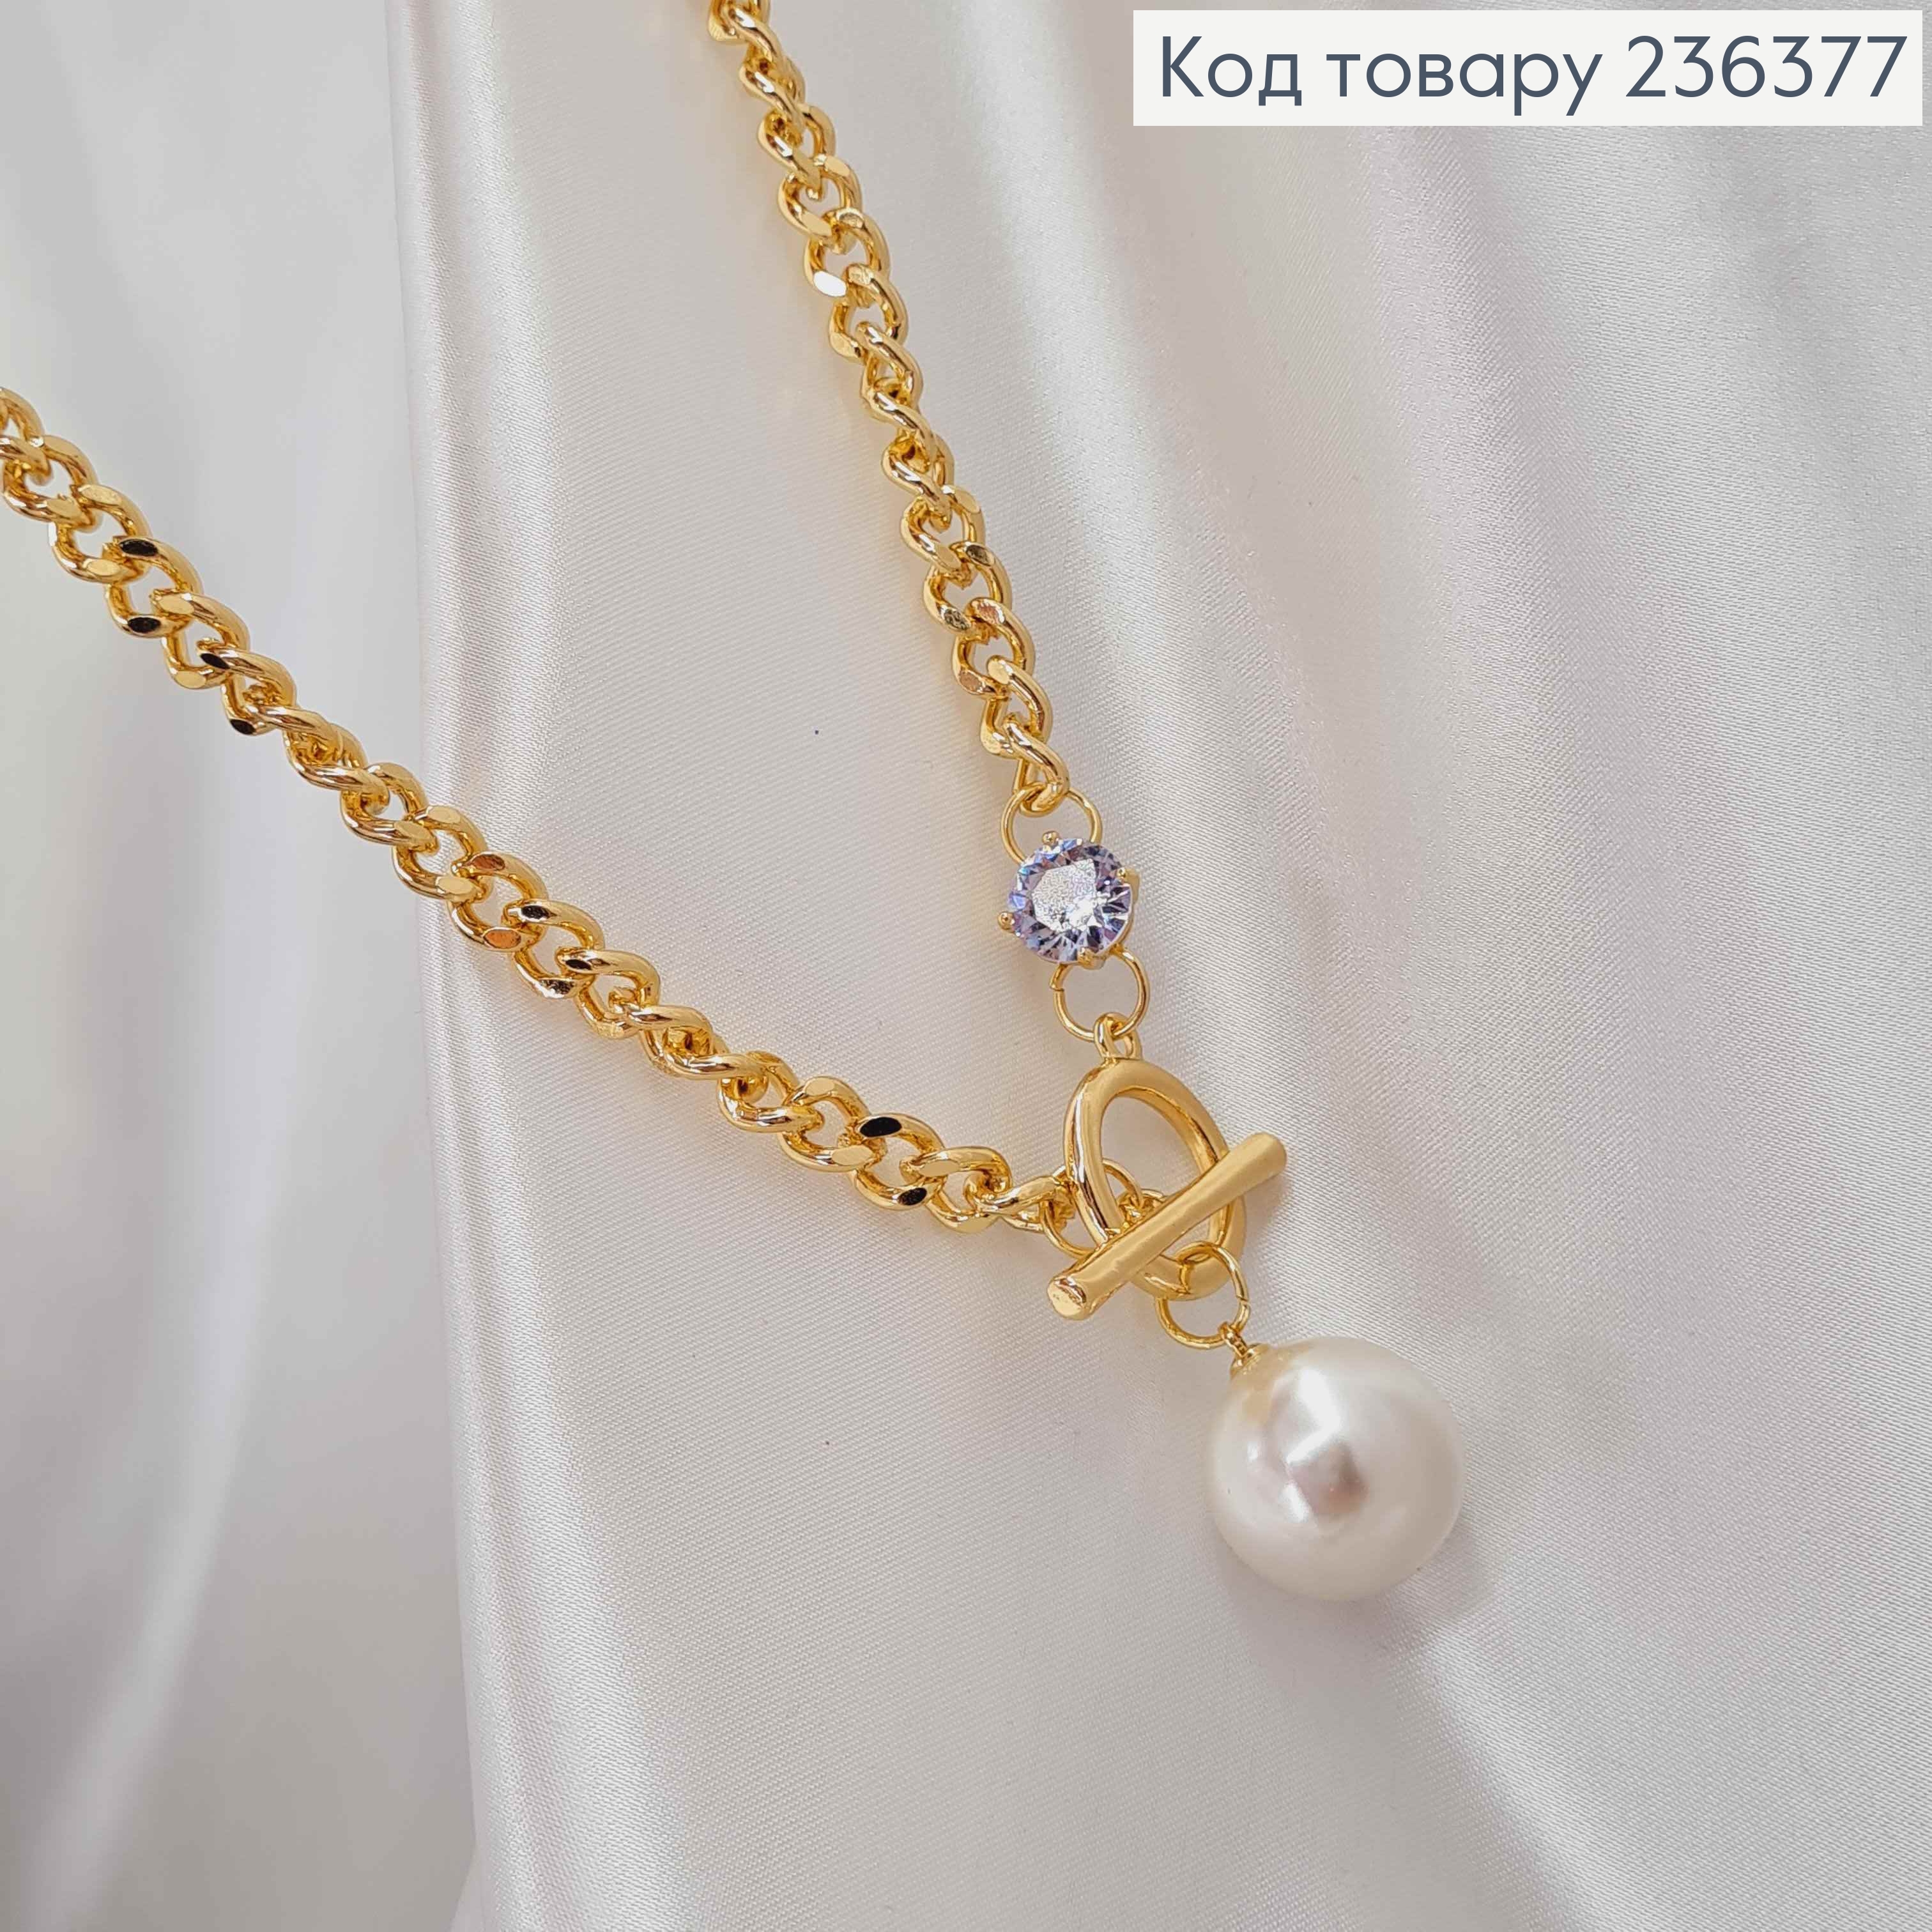 Бижутерия на шею цепочка с Большой Жемчужиной, 46см, золотого цвета, Fashion Jewelry 236377 фото 2